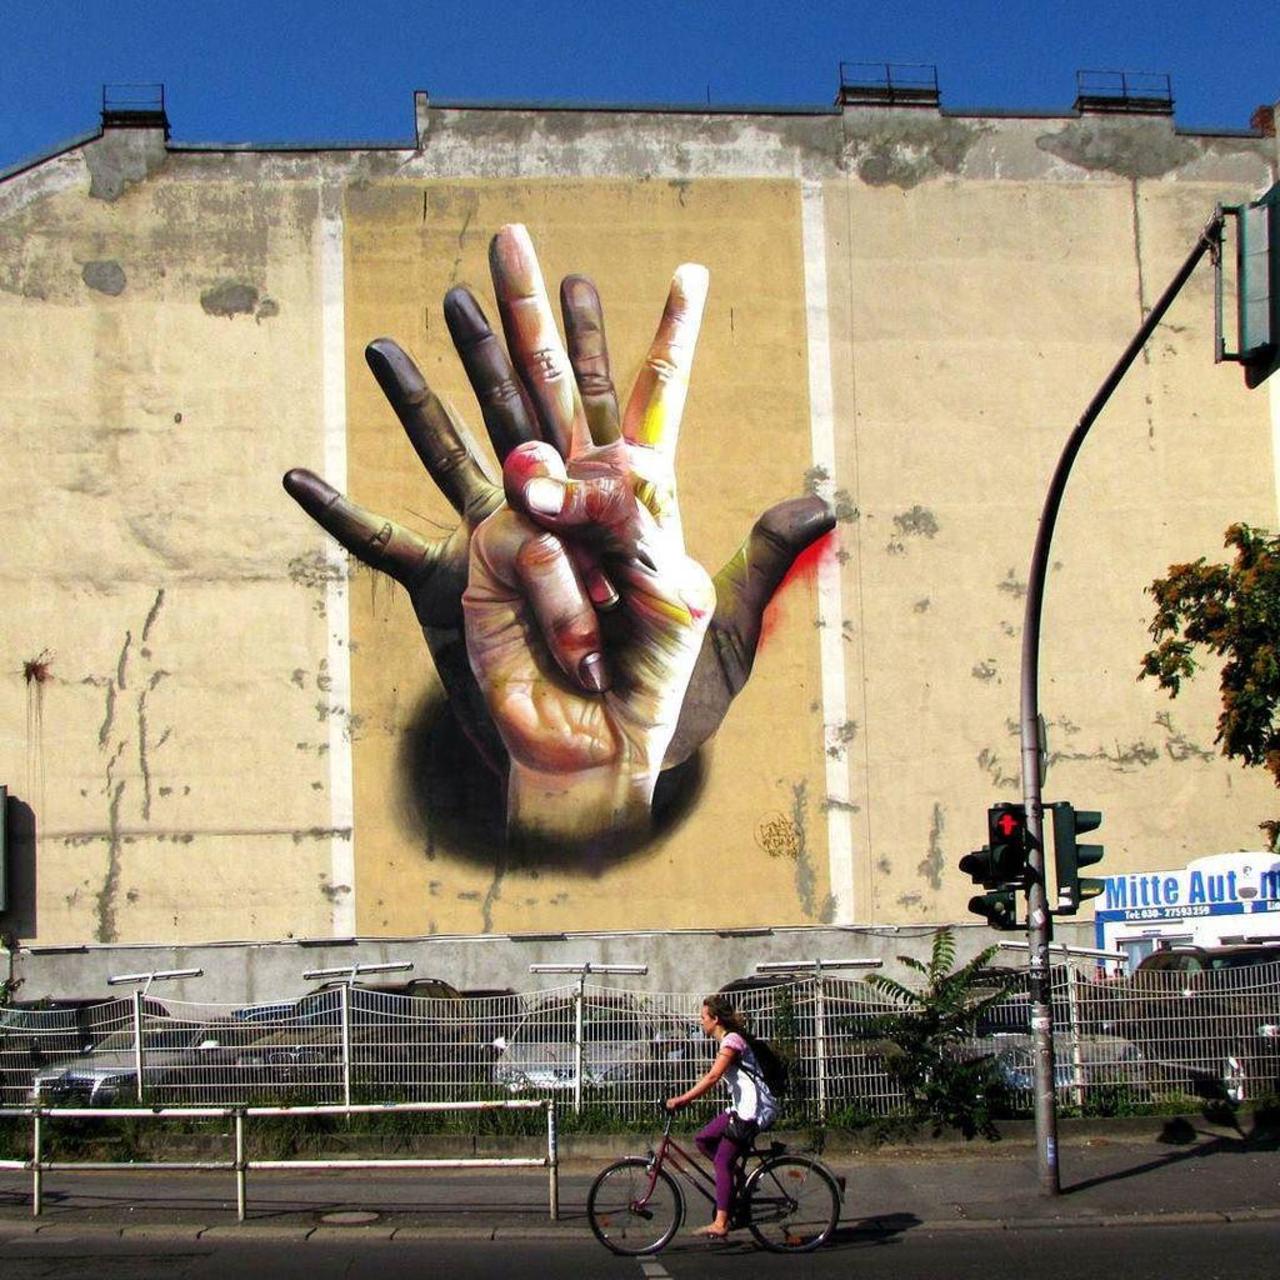 By @case_maclaim in Berlin. 
#streetart #graffiti #dsb_graff #tv_streetart #berlin #streetartberlin #berlinstreetar… http://t.co/k2iWtf8vKR